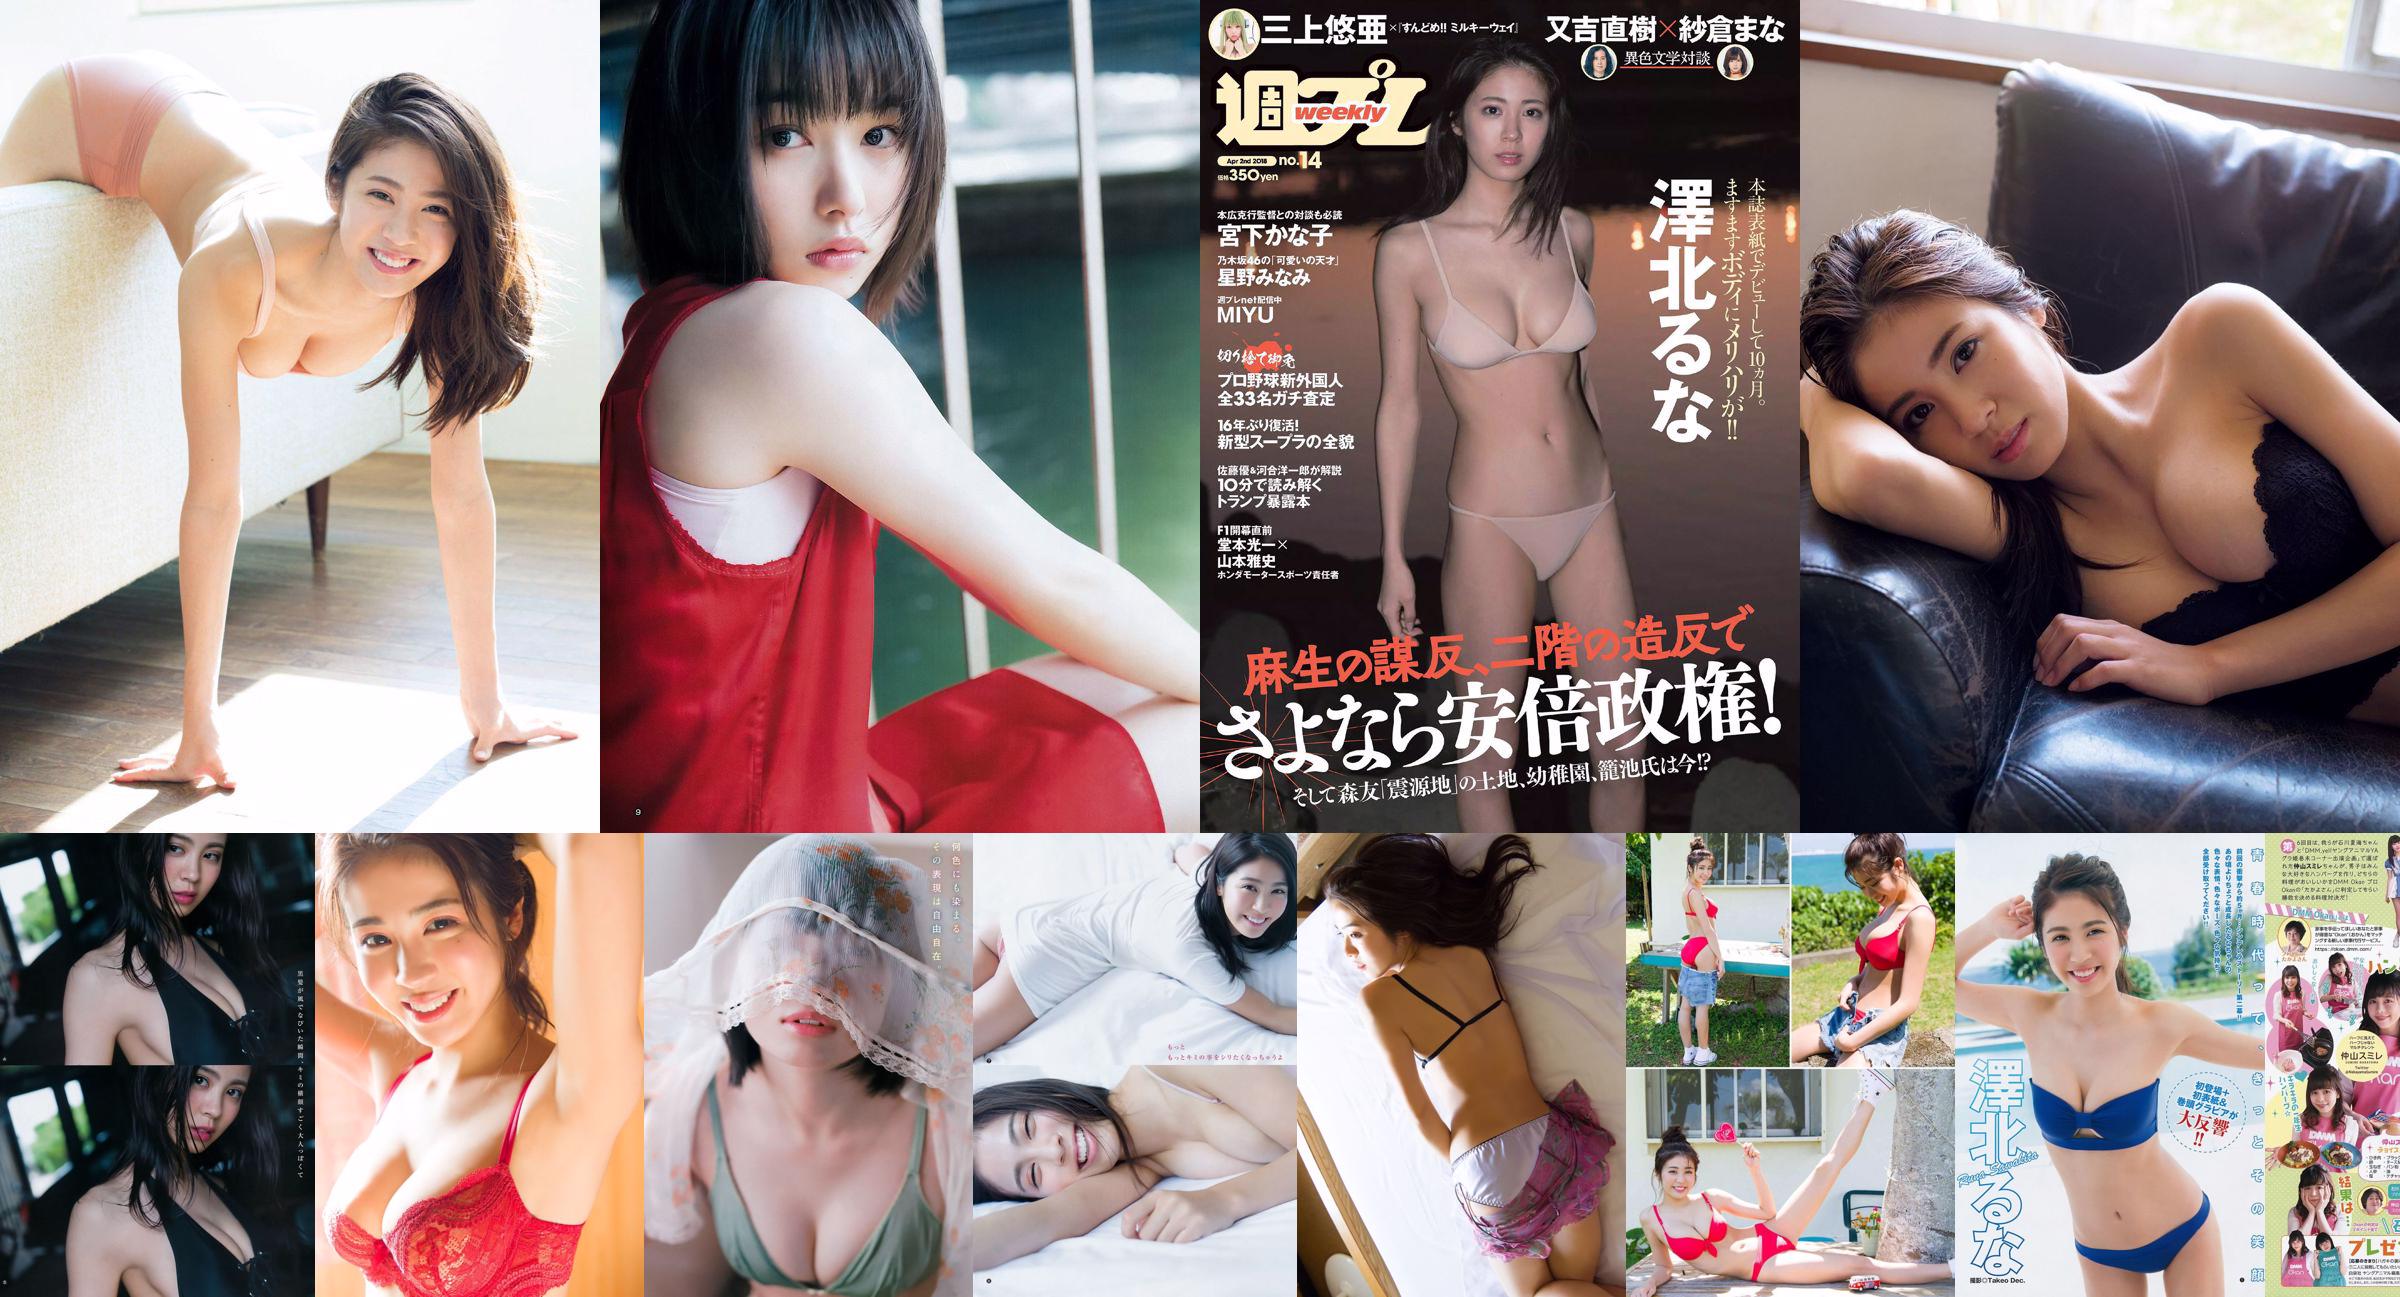 Luna Sawakita Minami Hoshino MIYU Kanako Miyashita Tsurugi Minami Kamei Nina Sakura [Playboy Semanal] 2018 Fotografia Nº 14 No.03d7ba Página 3